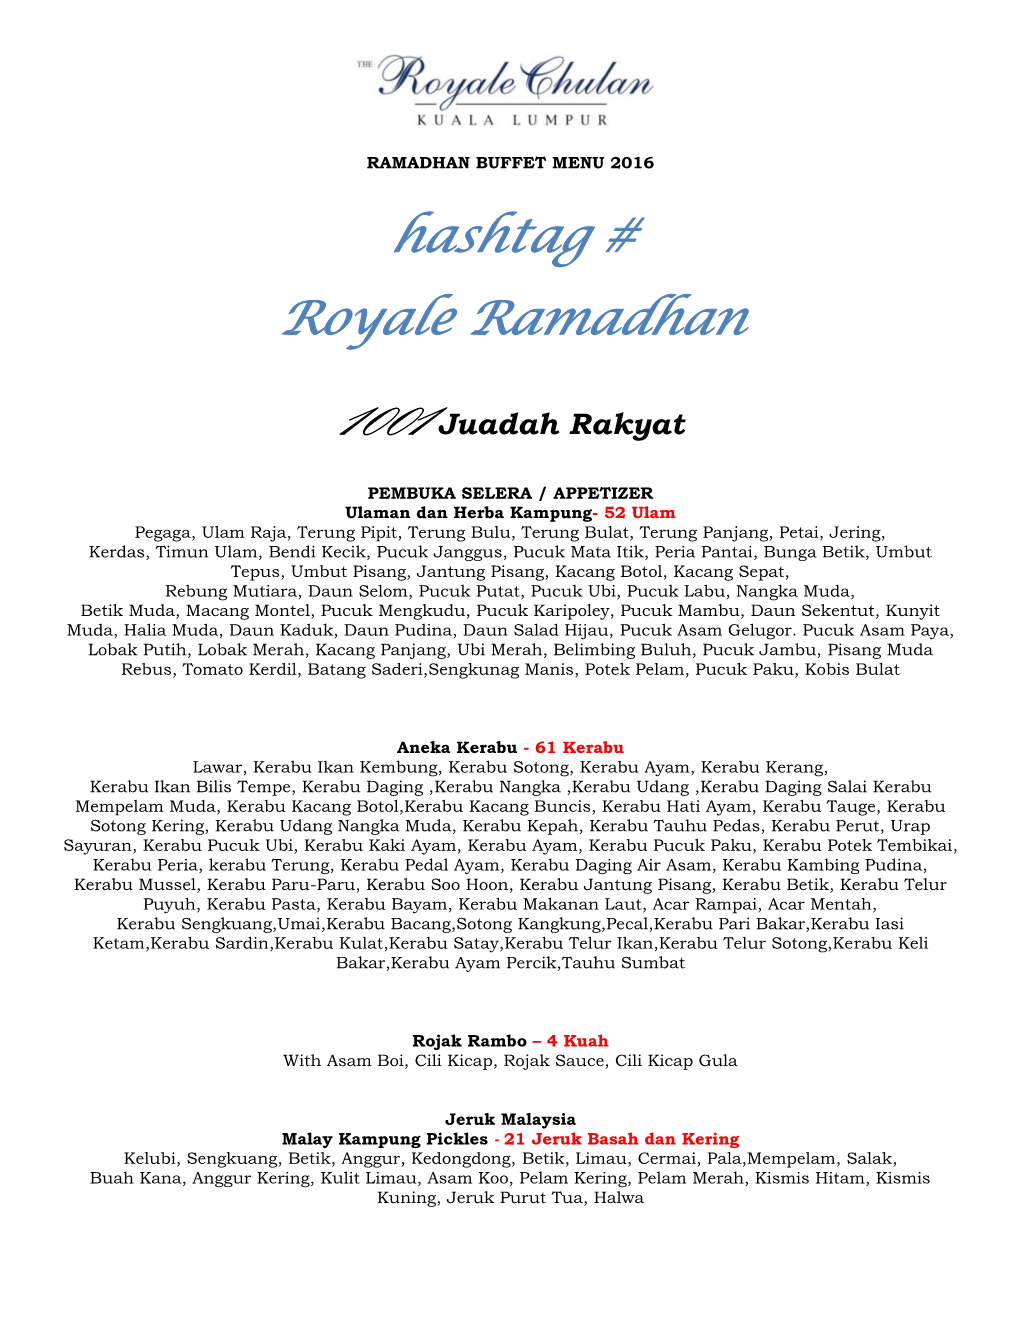 Hashtag # Royale Ramadhan